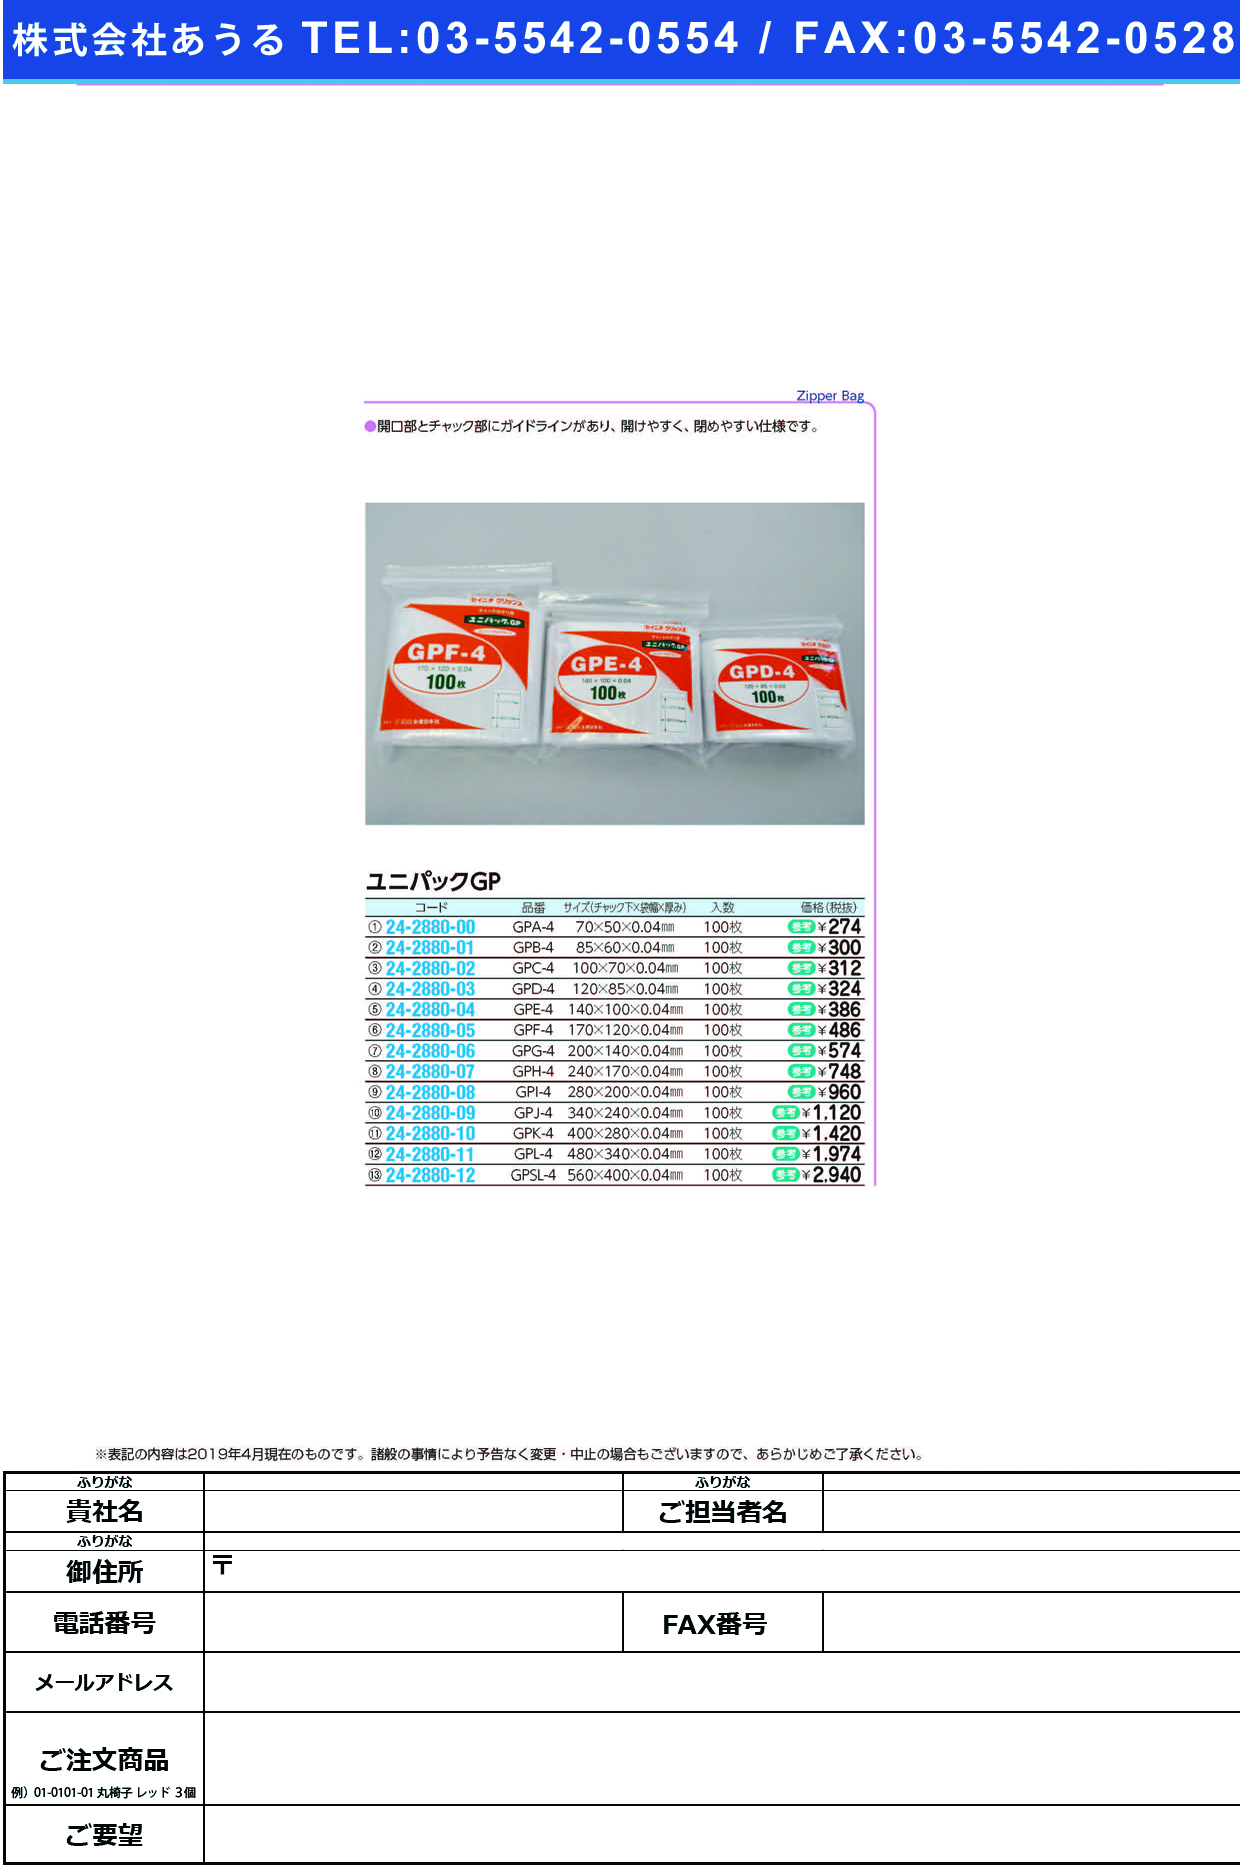 (24-2880-04)ユニパックＧＰ GPE-4(140X100MM)100 ﾕﾆﾊﾟｯｸGP【1袋単位】【2019年カタログ商品】